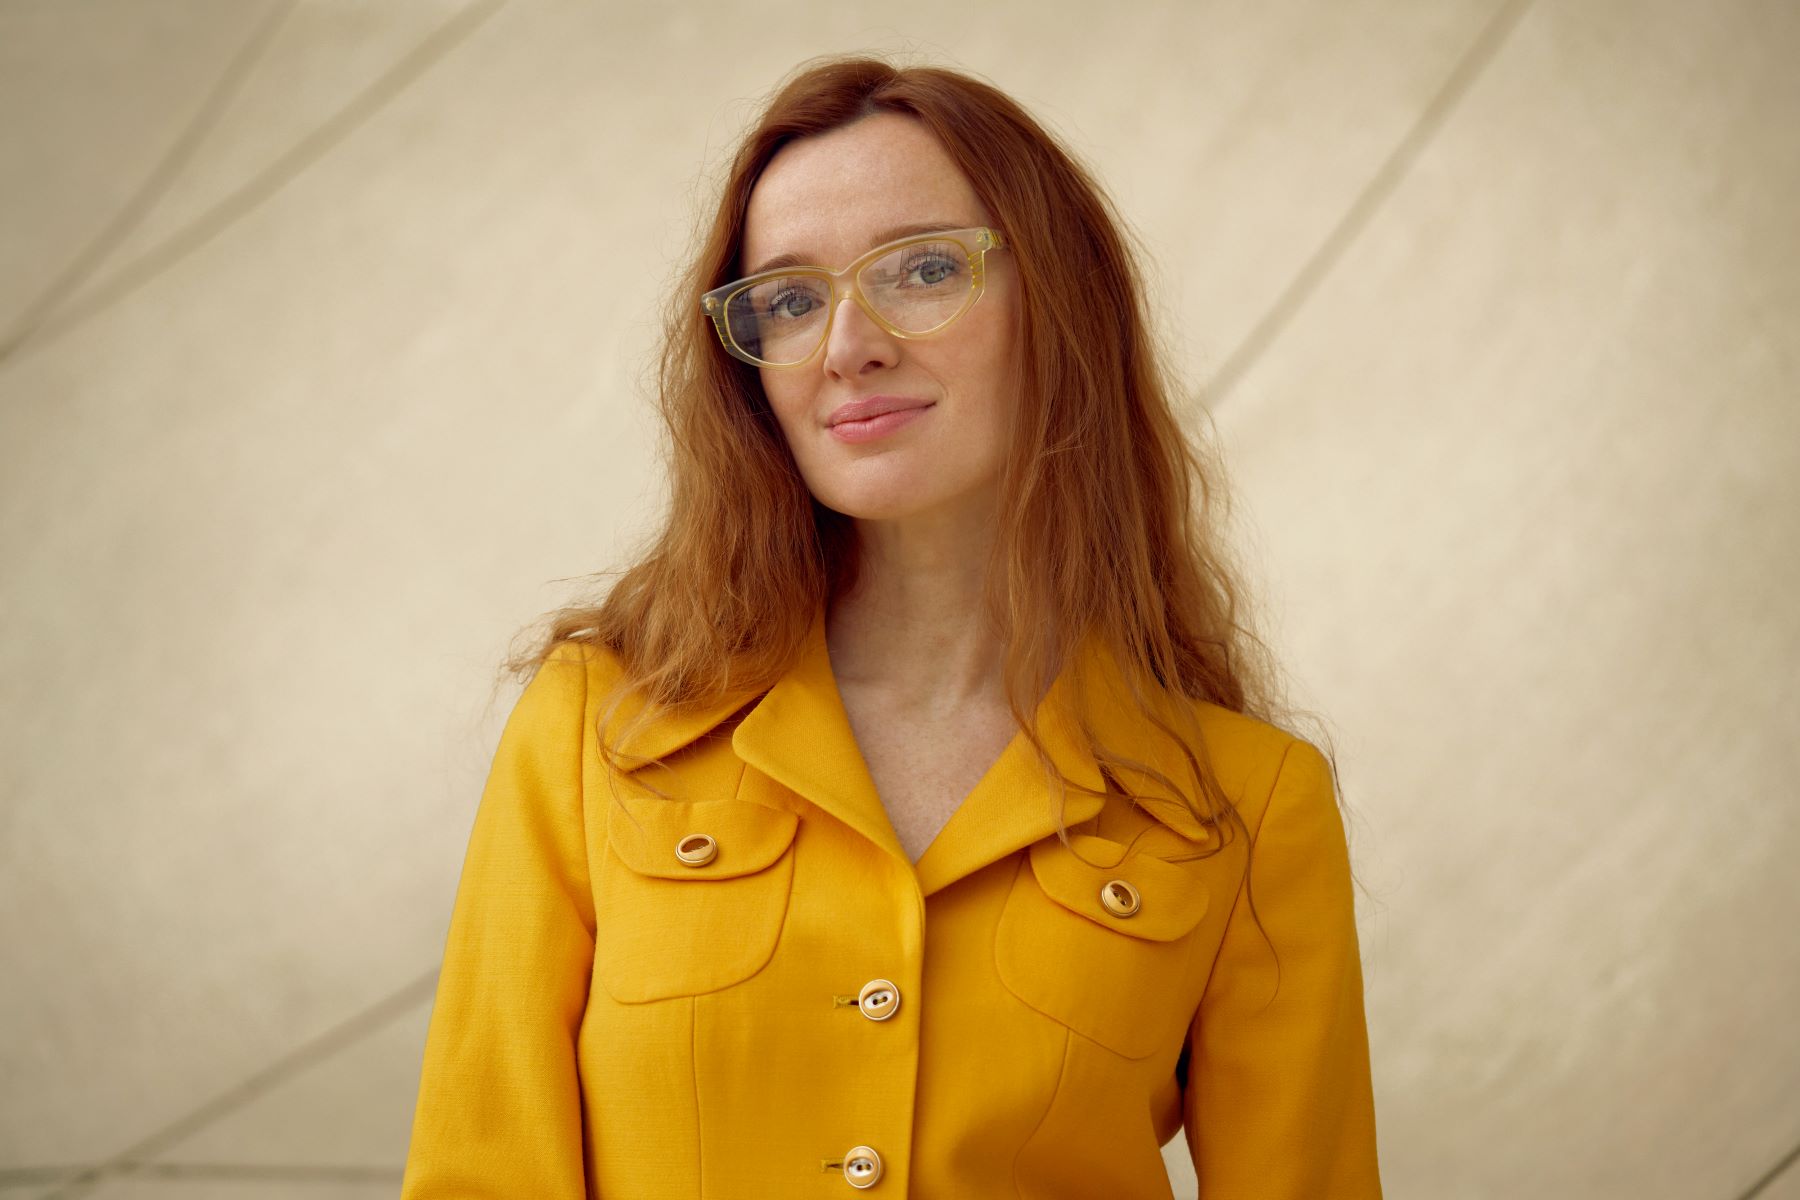 Natalia Romik - kobieta w okularach, ma długie rude włosy. Jest ubrana w żółtą koszulę.